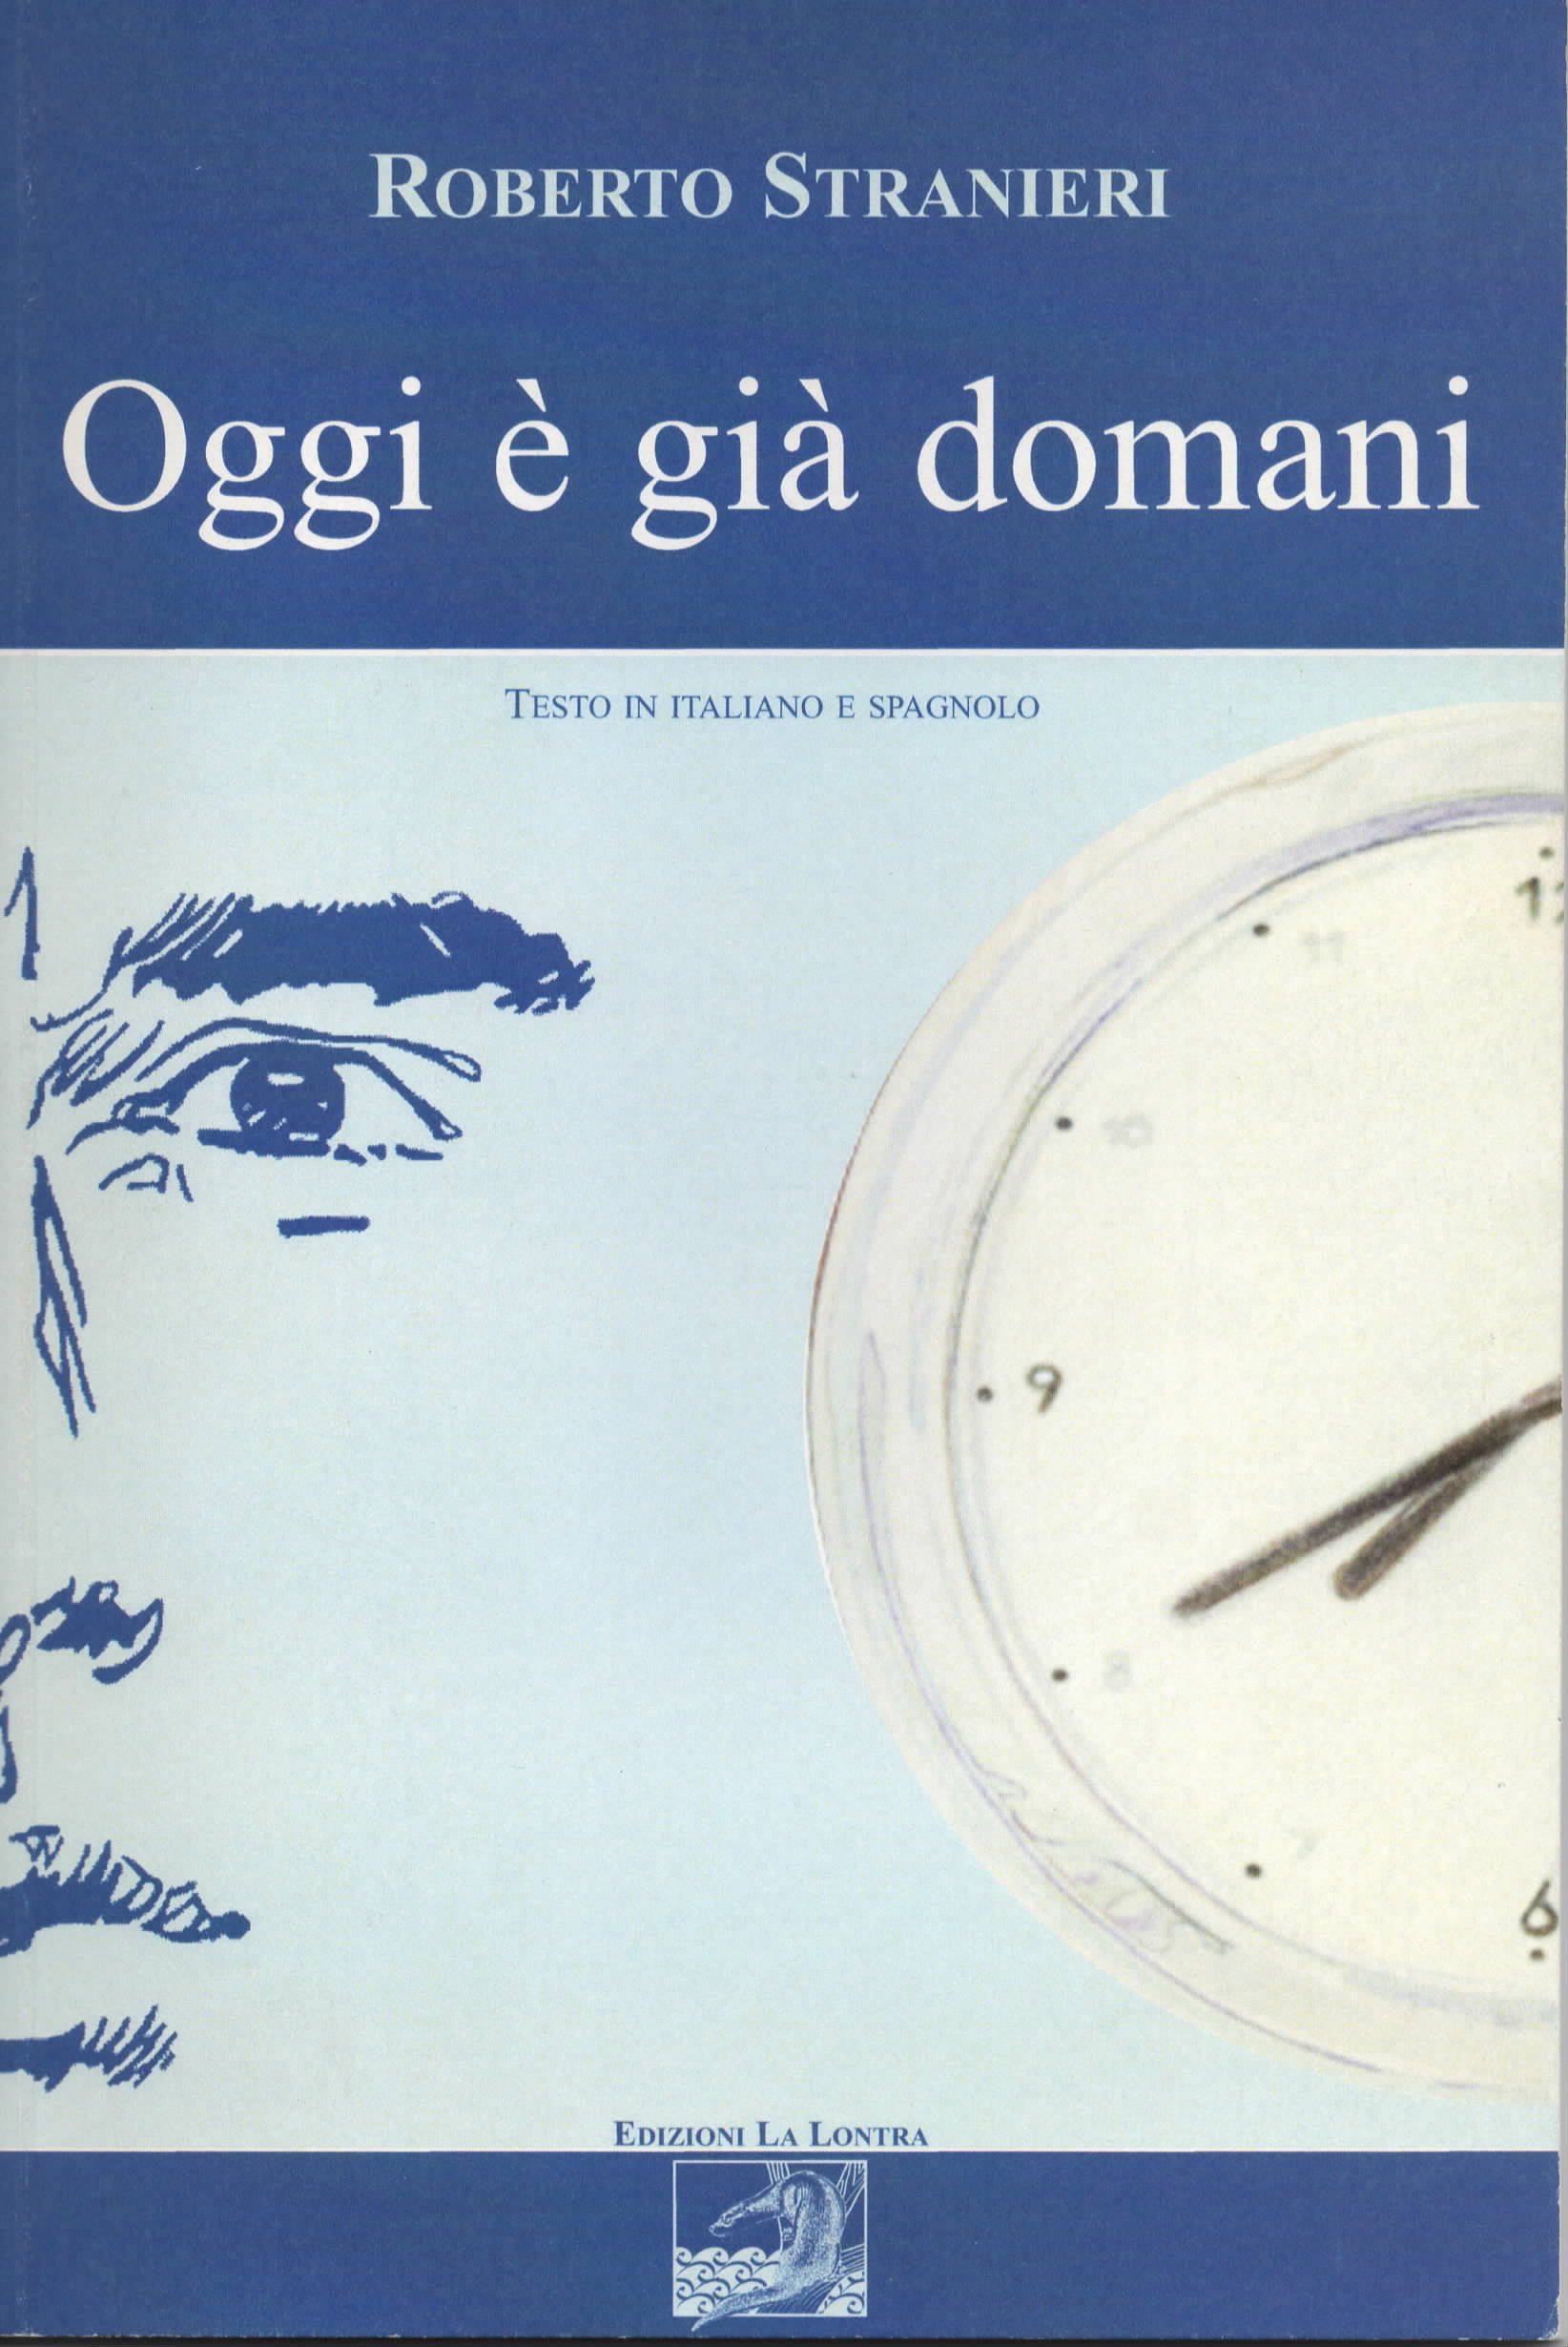 2007 - Cover of 'Oggi é già  domani' by Roberto Stranieri, edizioni La Lontra